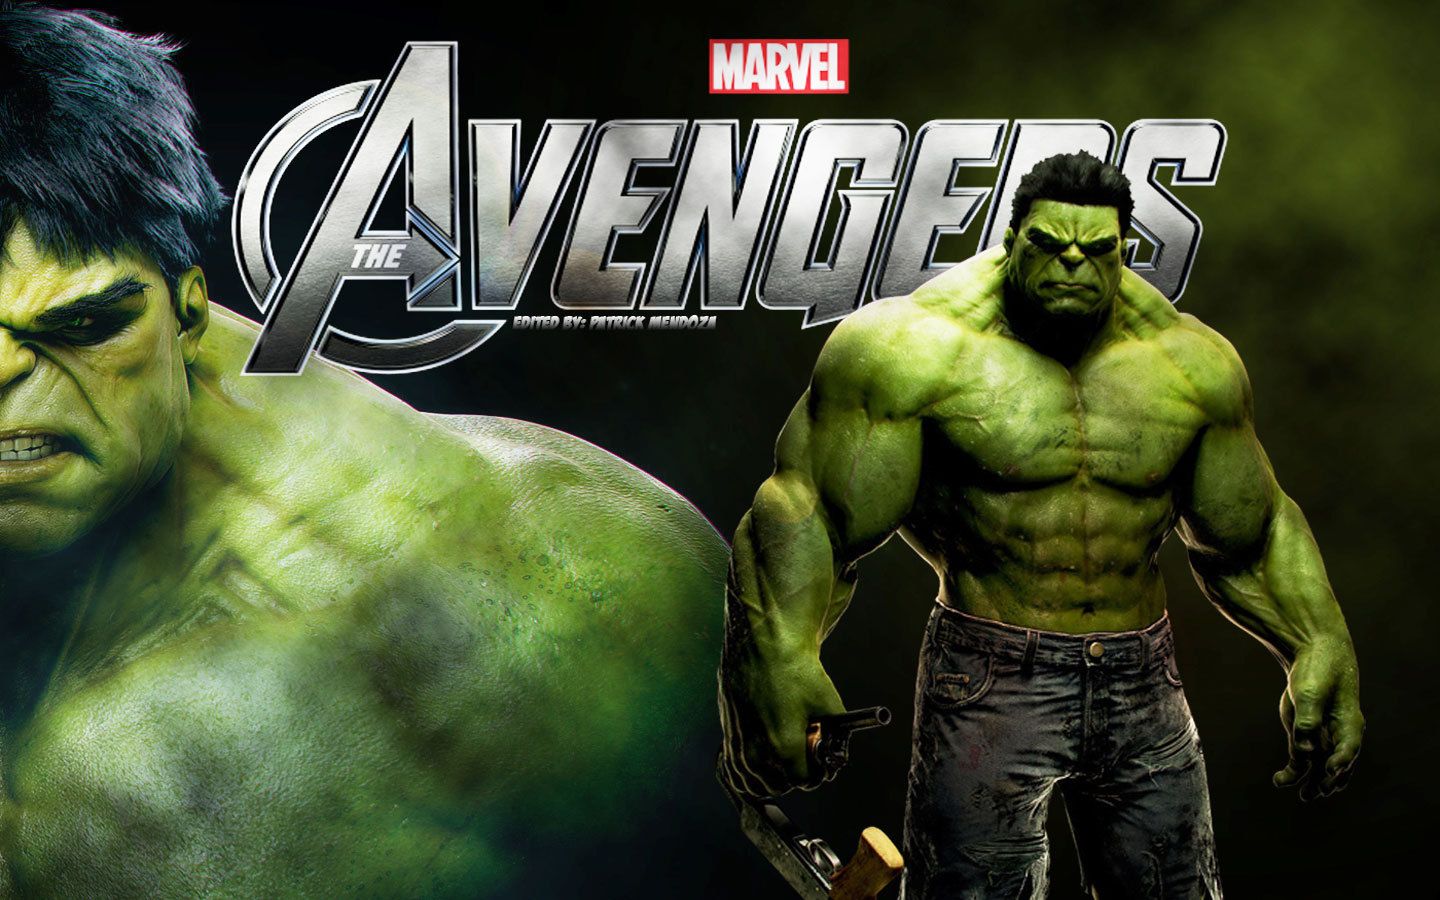 Kasci On Hulk Avengers Wallpaper